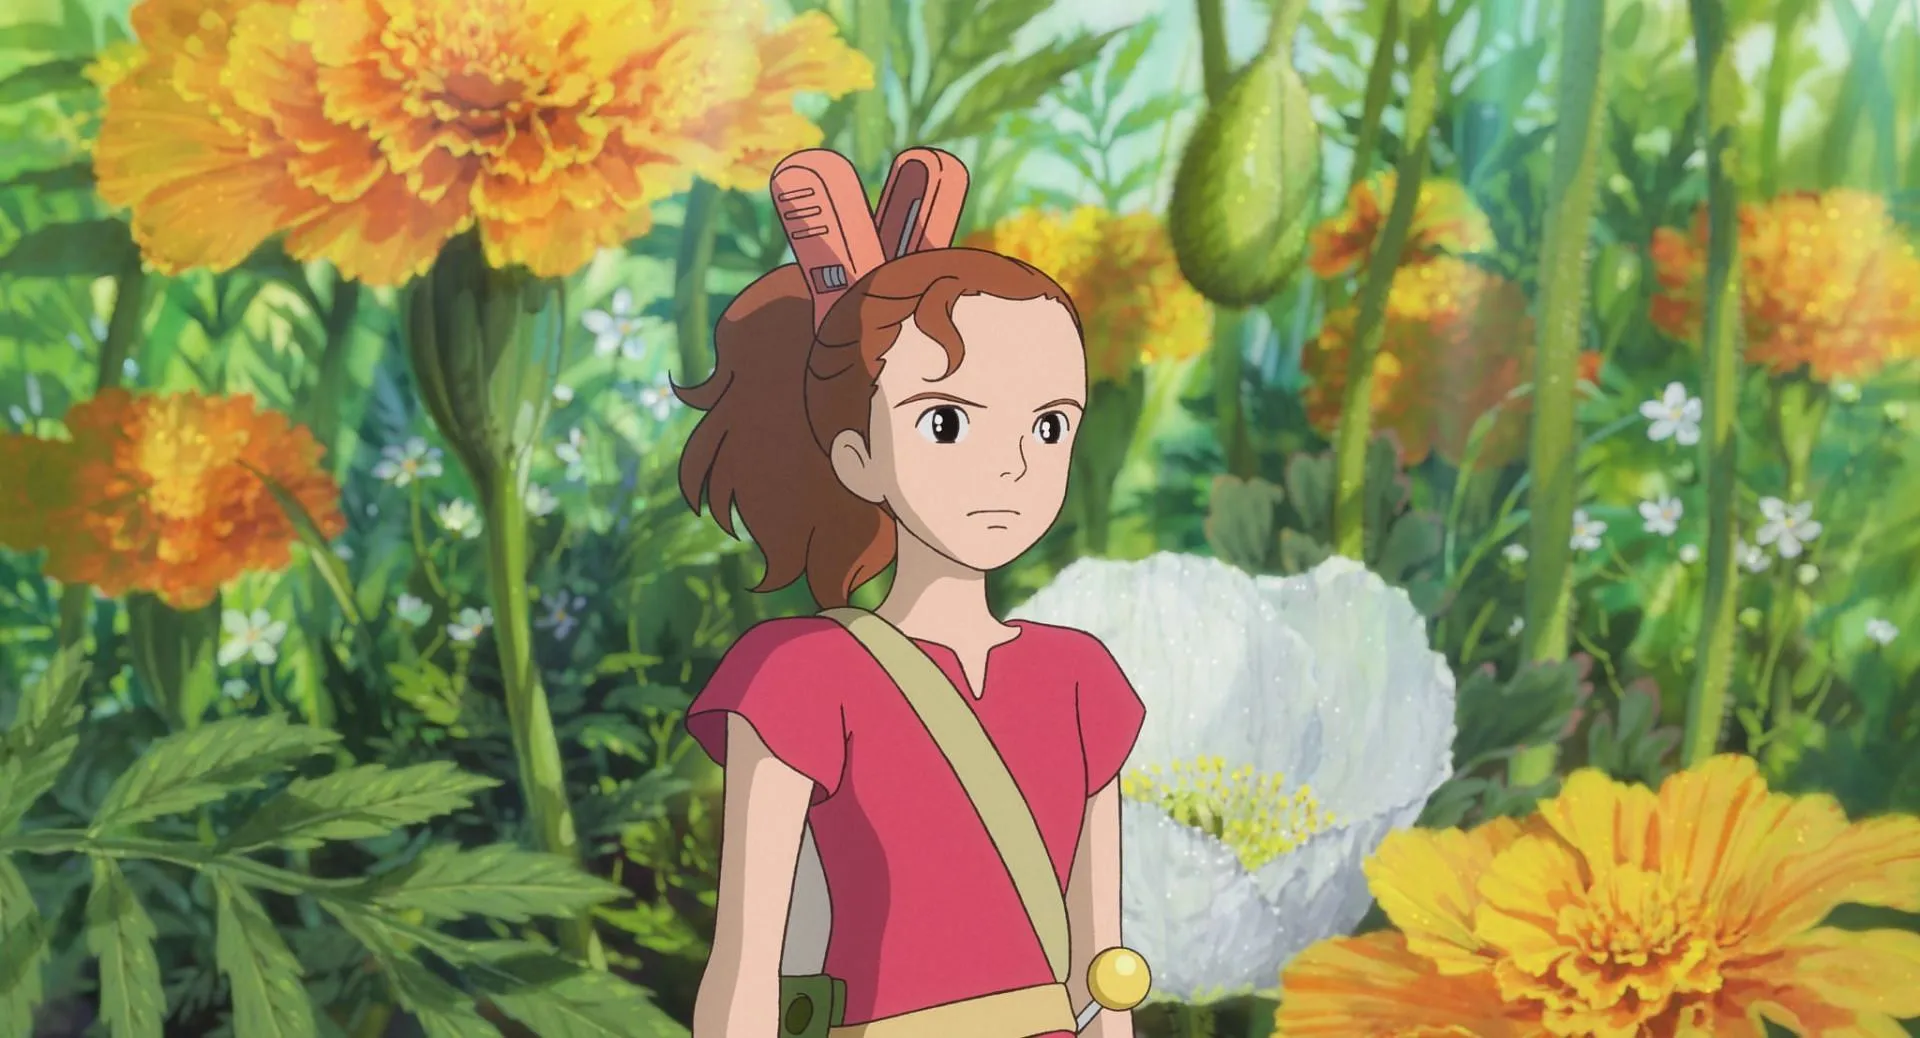 Le monde secret d'Arrietty (Image via Studio Ghibli)